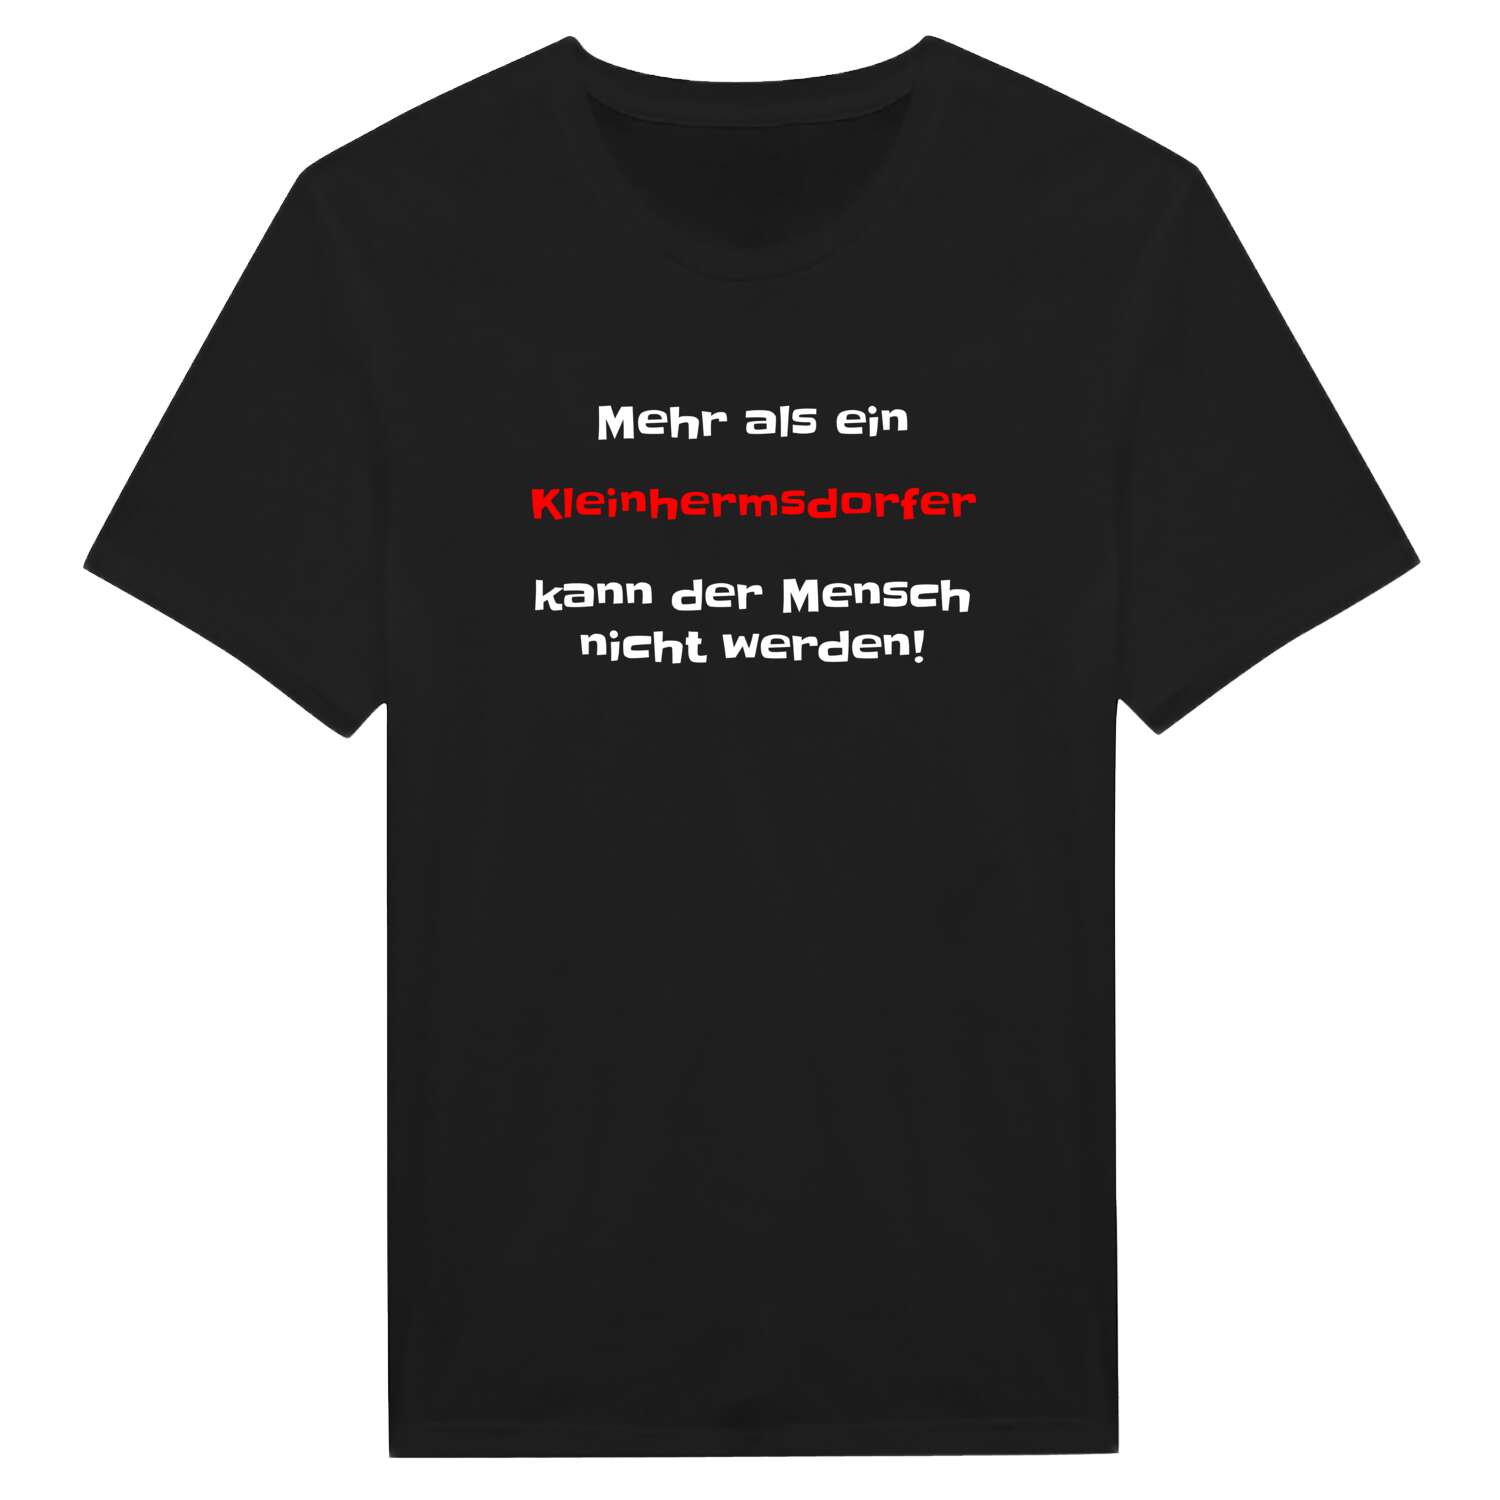 Kleinhermsdorf T-Shirt »Mehr als ein«